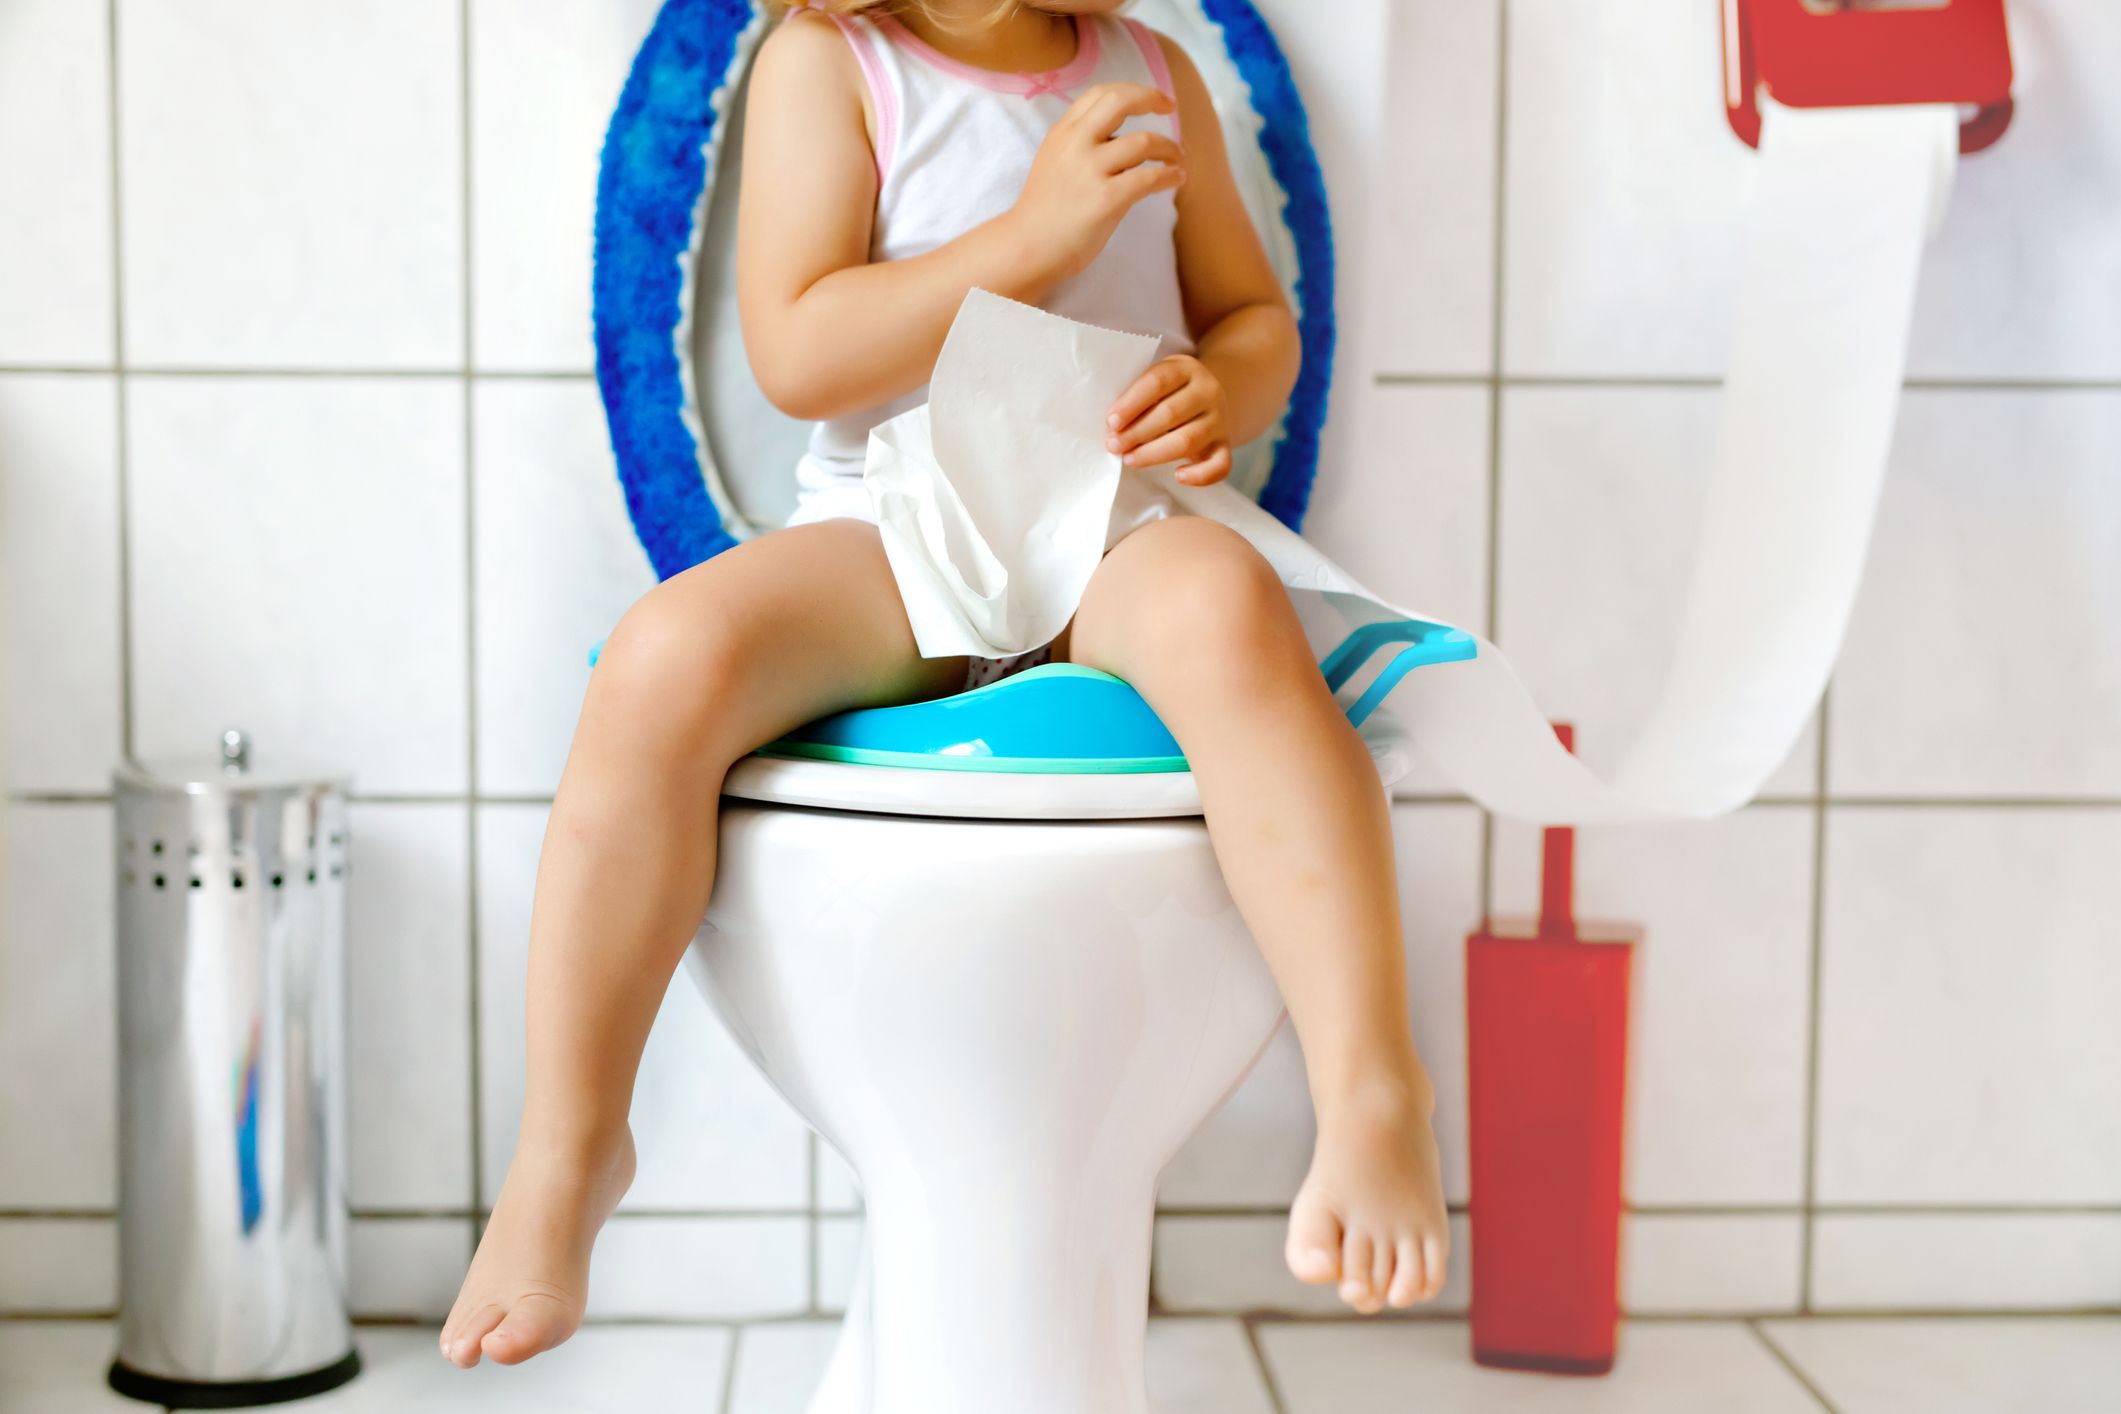 Réducteur de siège de toilette souple pour enfant